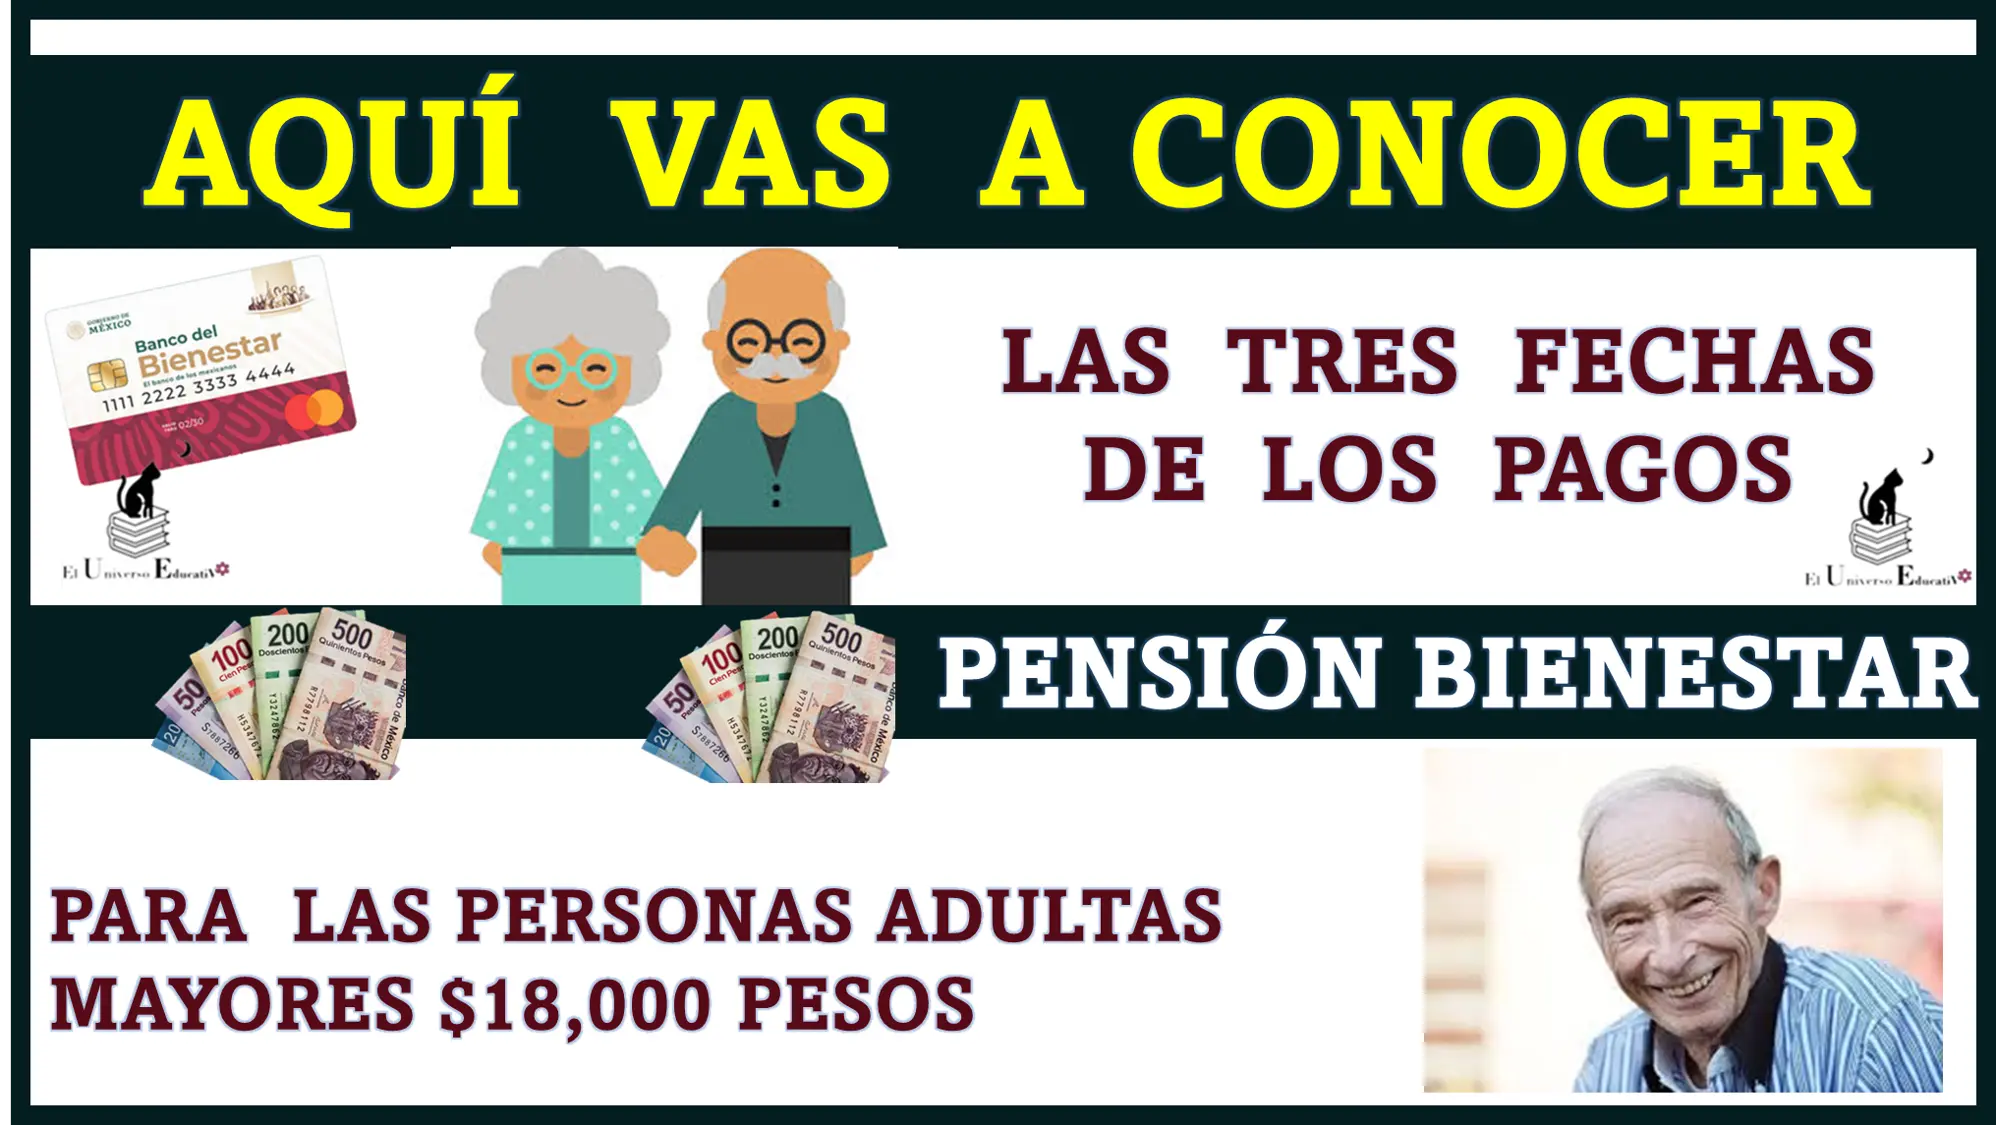 AQUÍ VAS A CONOCER LAS TRES FECHAS DE LOS PAGOS | PENSIÓN BIENESTAR PARA LAS PERSONAS ADULTAS MAYORES | $18,000 PESOS 